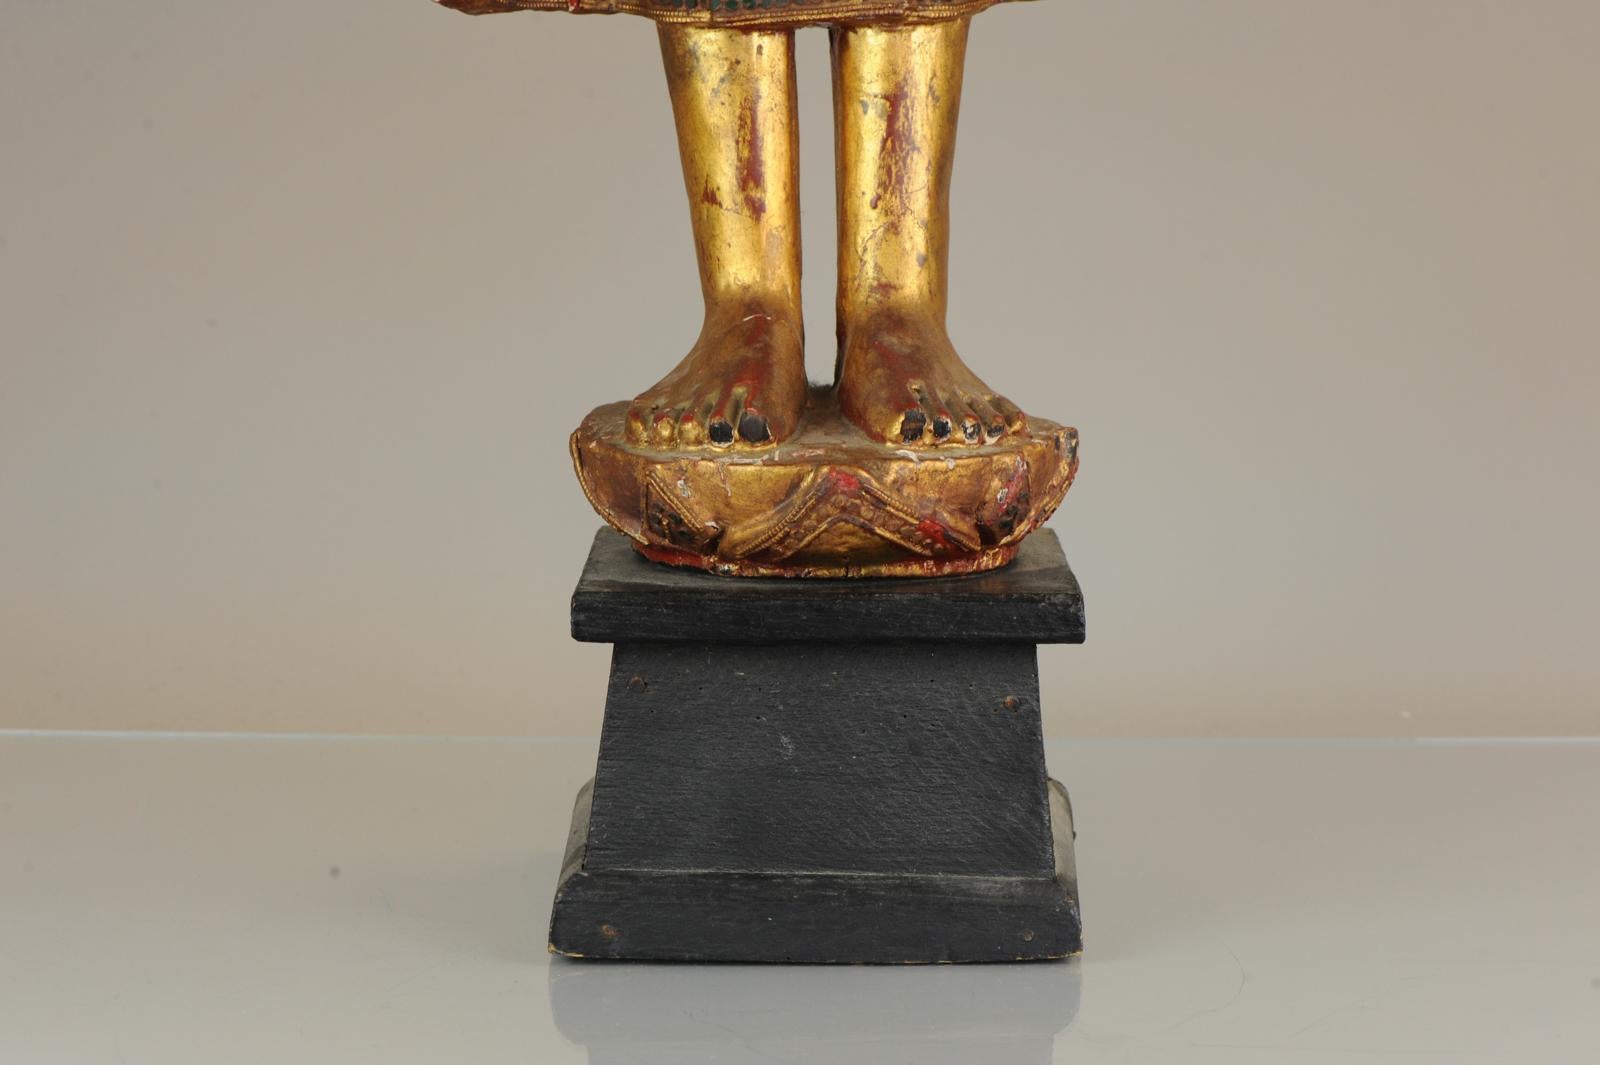 Énorme statue magnifiquement sculptée d'un bouddha en position assise. Il est très grand, une assiette de taille normale est ajoutée dans 1 des photos pour comparaison.

Un bel artefact, qui semble provenir de Thaïlande, probablement de la seconde